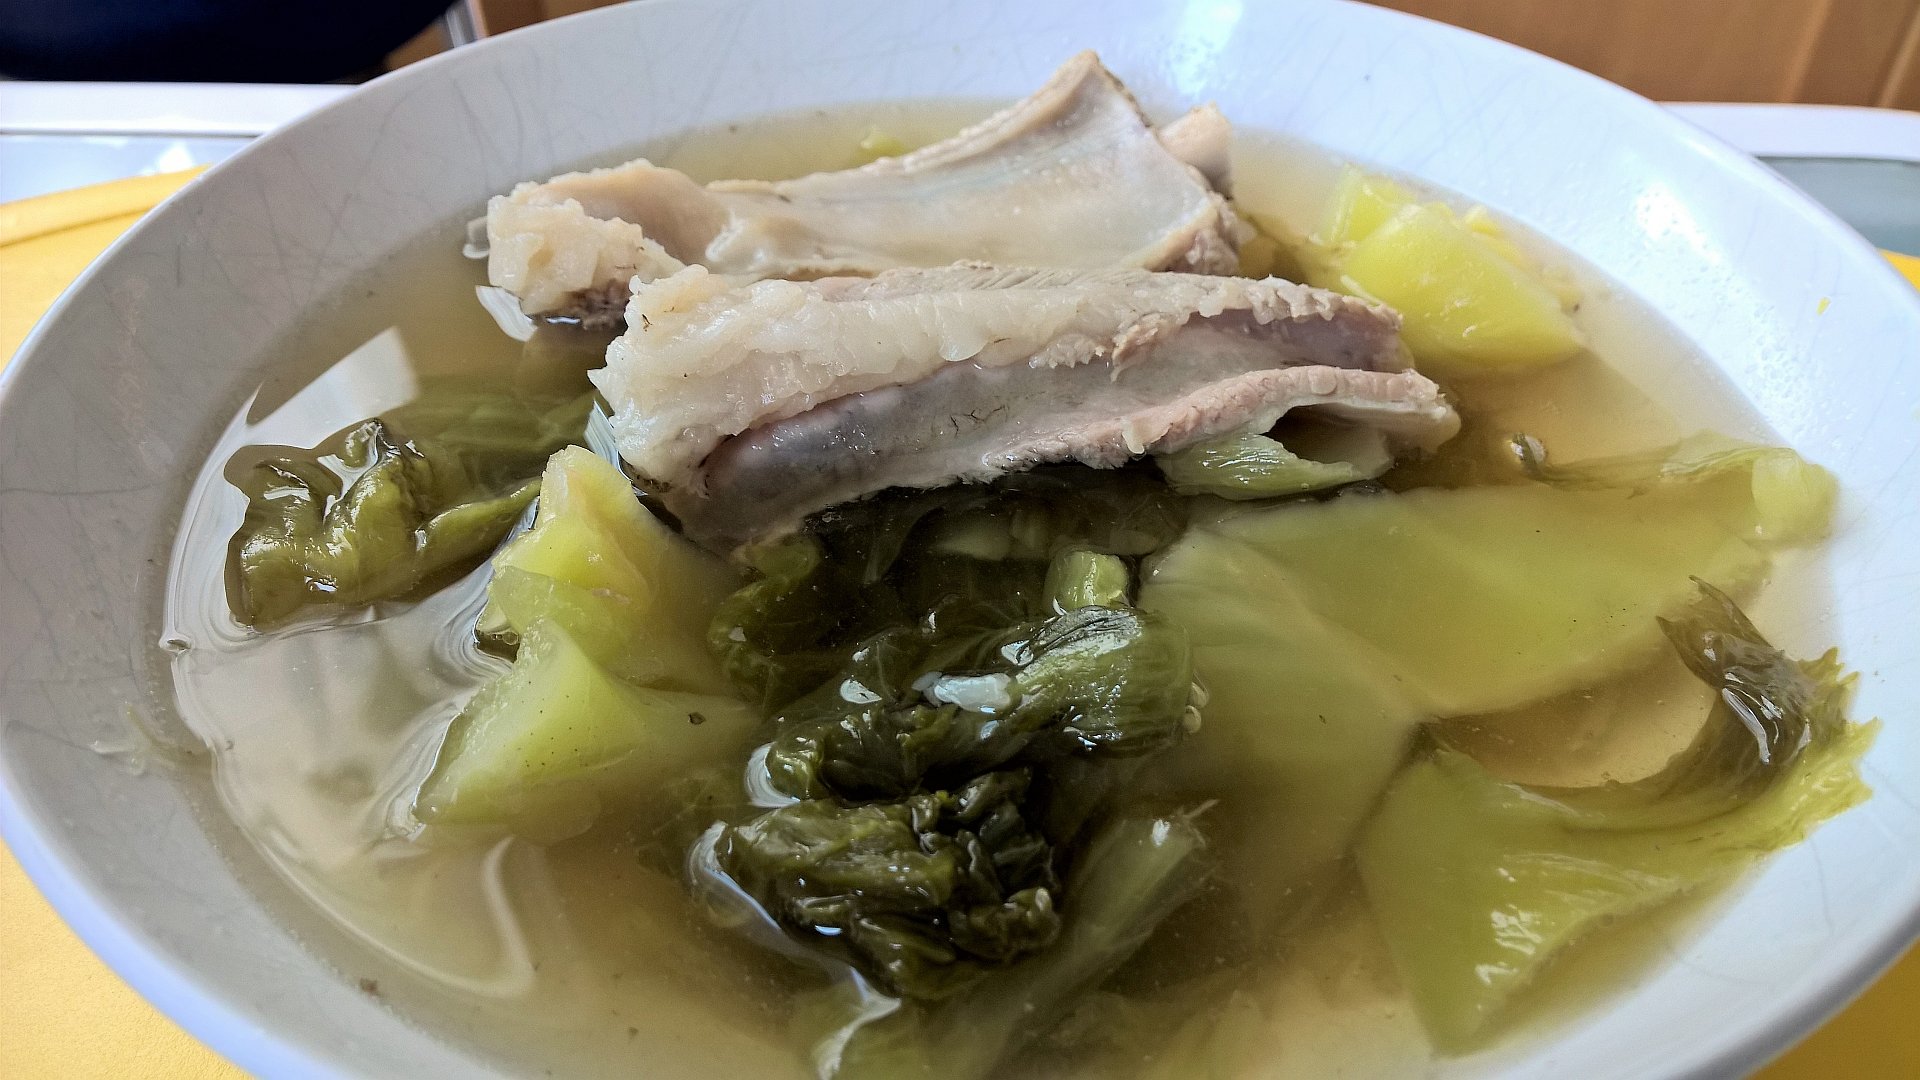 Thailändische Suppe mit Senfkohl und Schweinerippchen - ต้มจืดผักกาดดองใส่กระดูกหมู (Tom Jued Pak Kad Dong Sai Ka Duuk Muh)